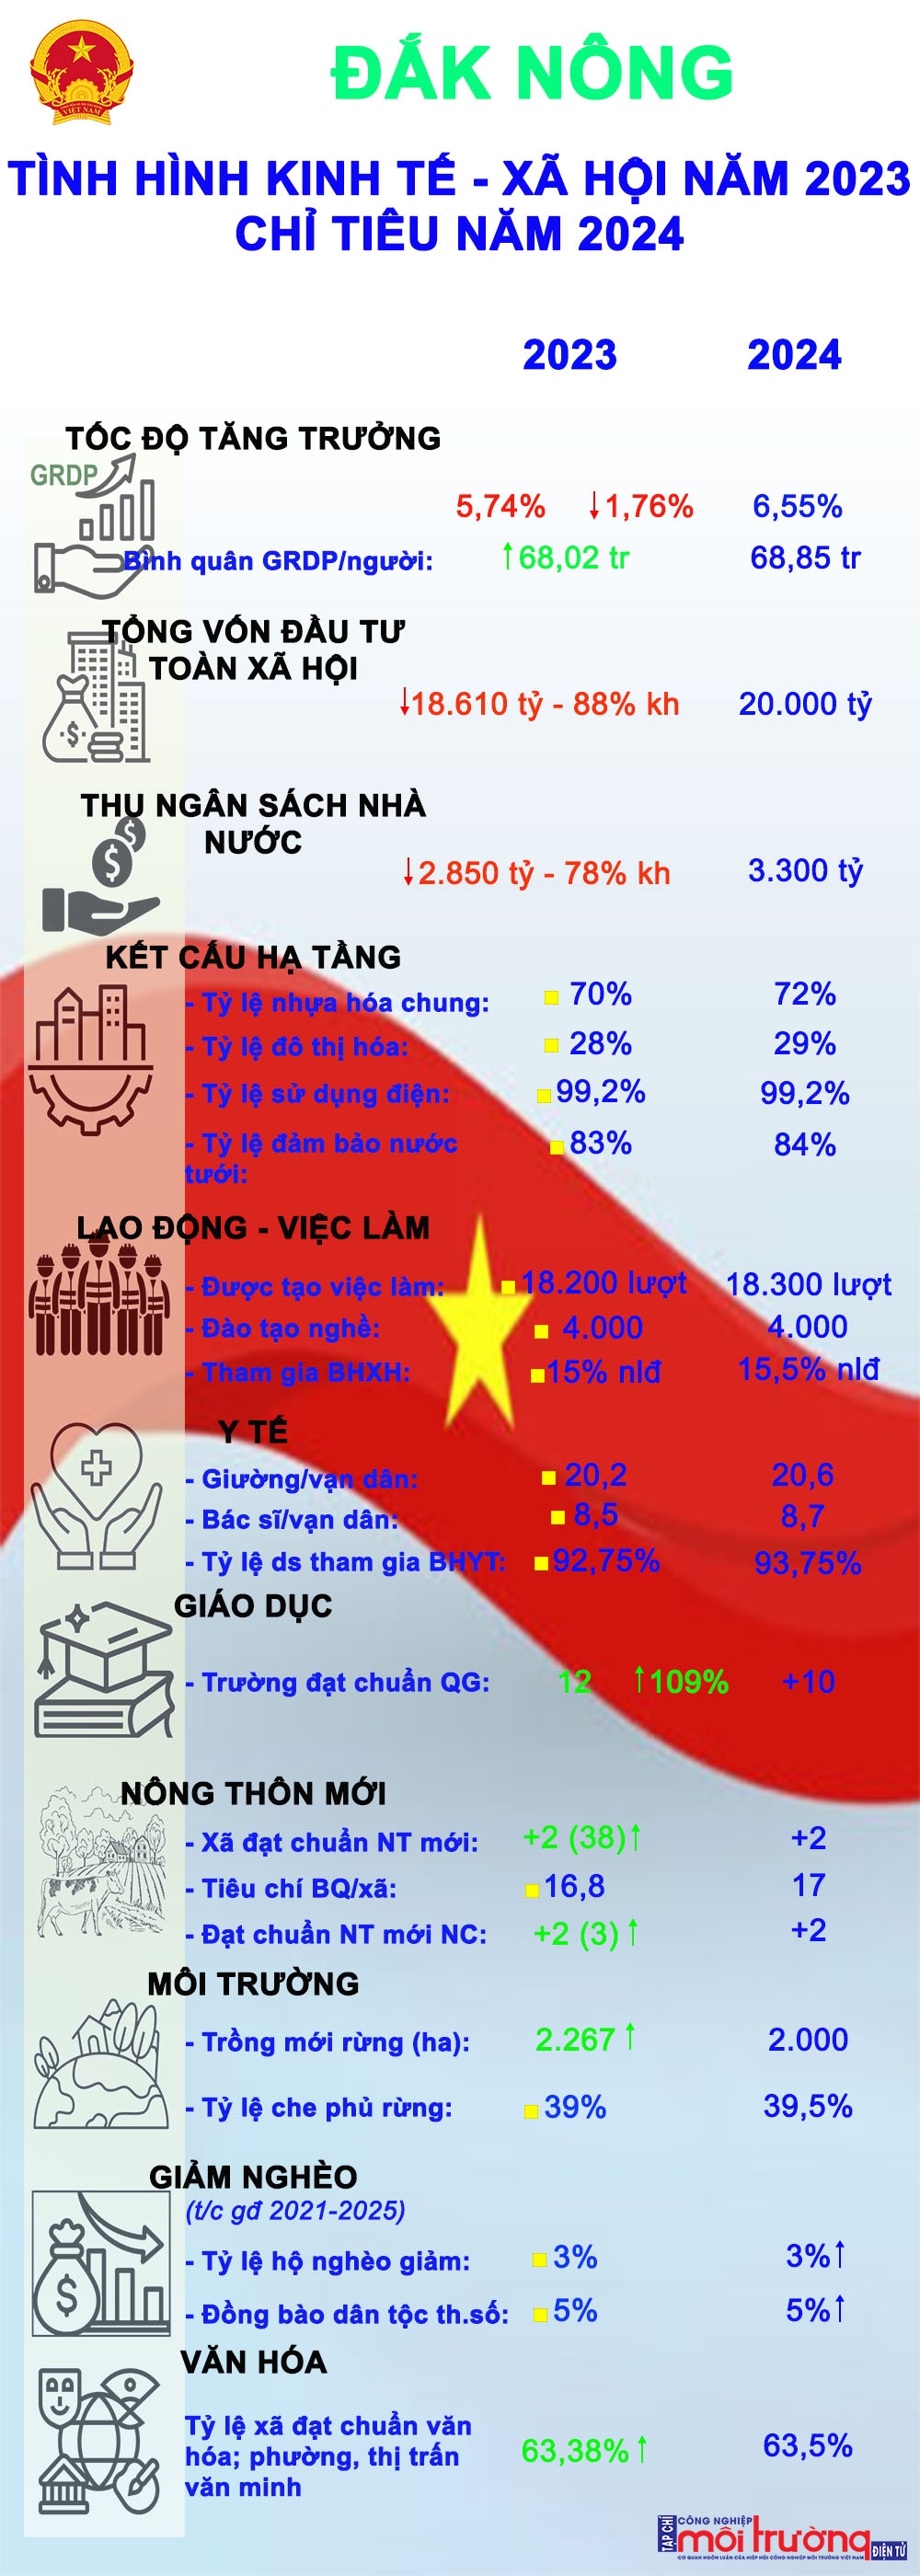 Đắk Nông: Kết quả thực hiện chỉ tiêu kinh tế - xã hội năm 2023 và chỉ tiêu kinh tế - xã hội năm 2024